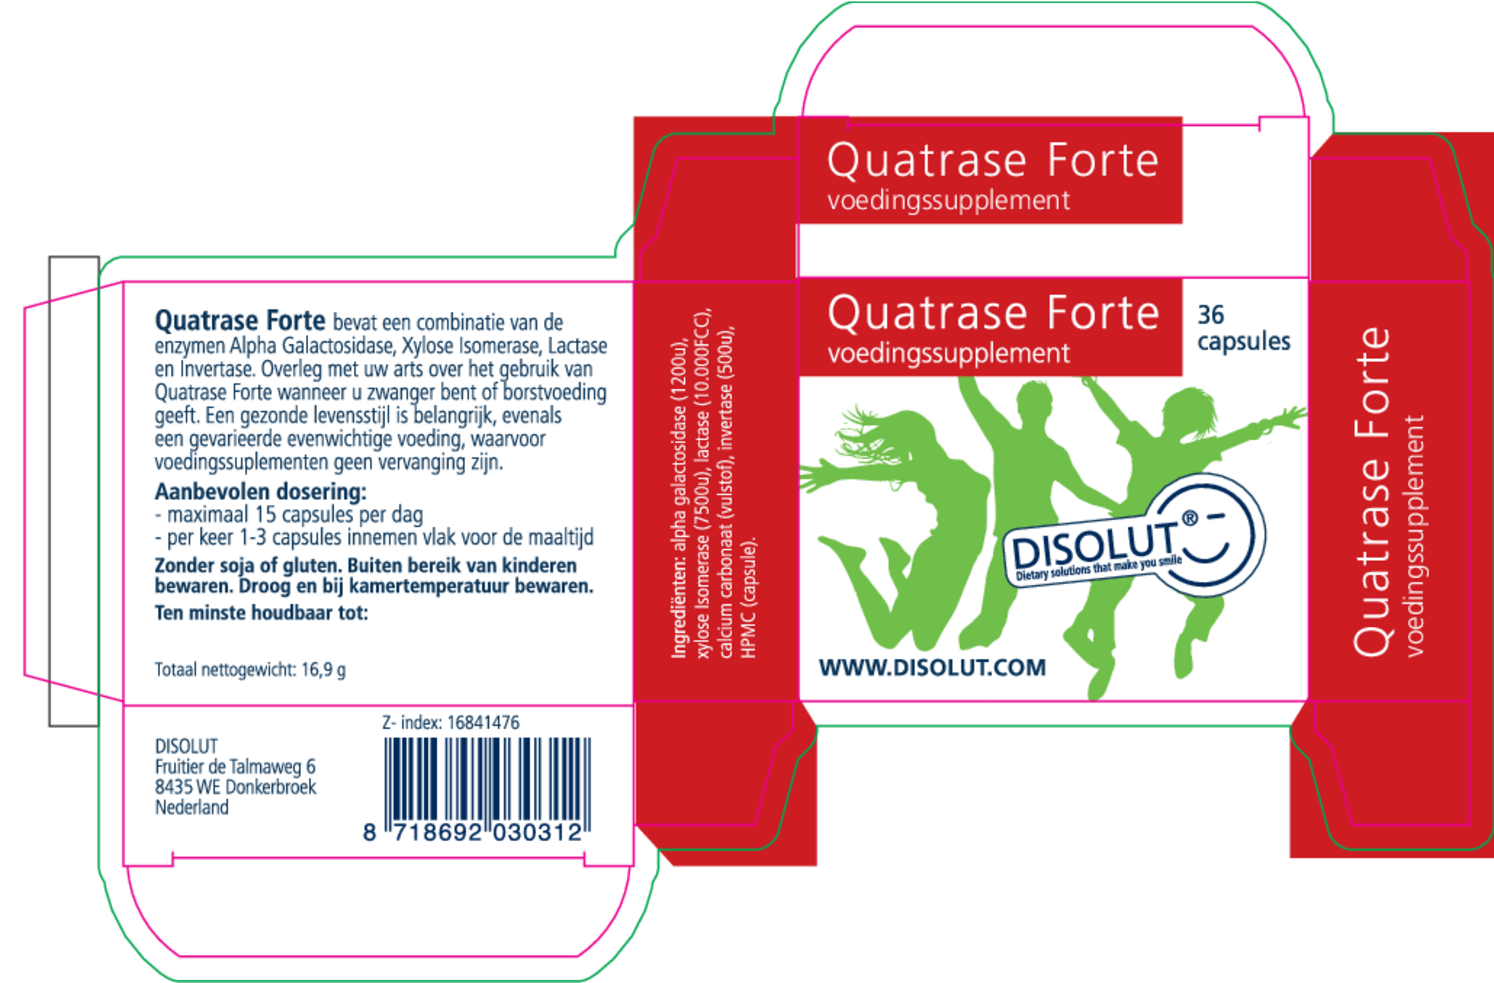 Quatrase Forte Capsules afbeelding van document #1, etiket